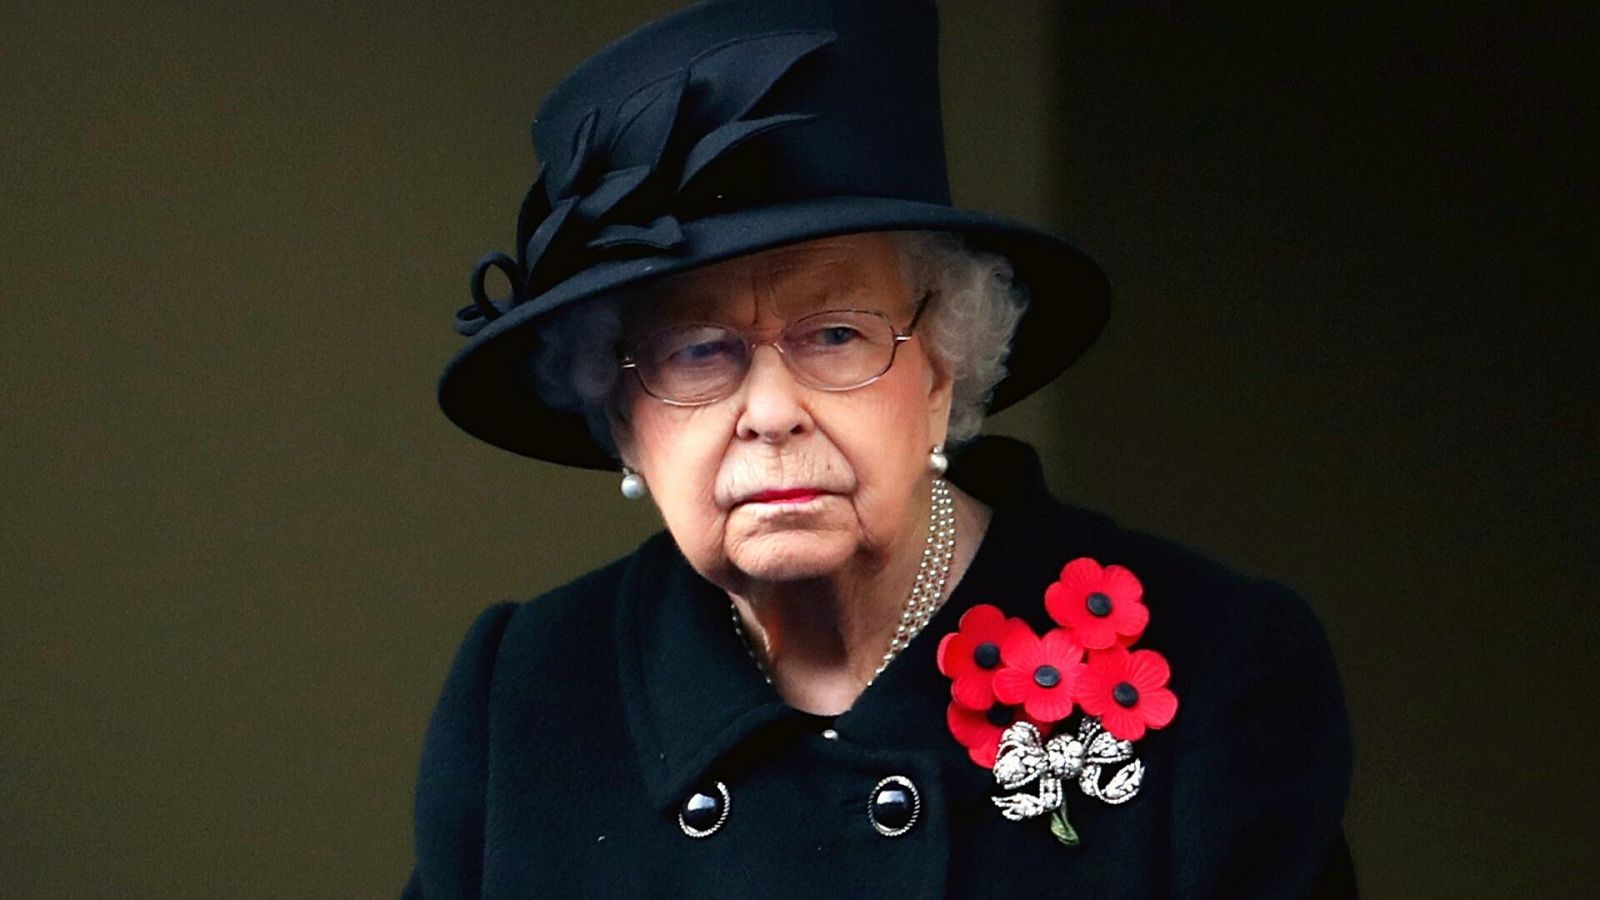 La reina Isabel II del Reino Unido viste de luto (negro) por la muerte de Felipe de Edimburgo